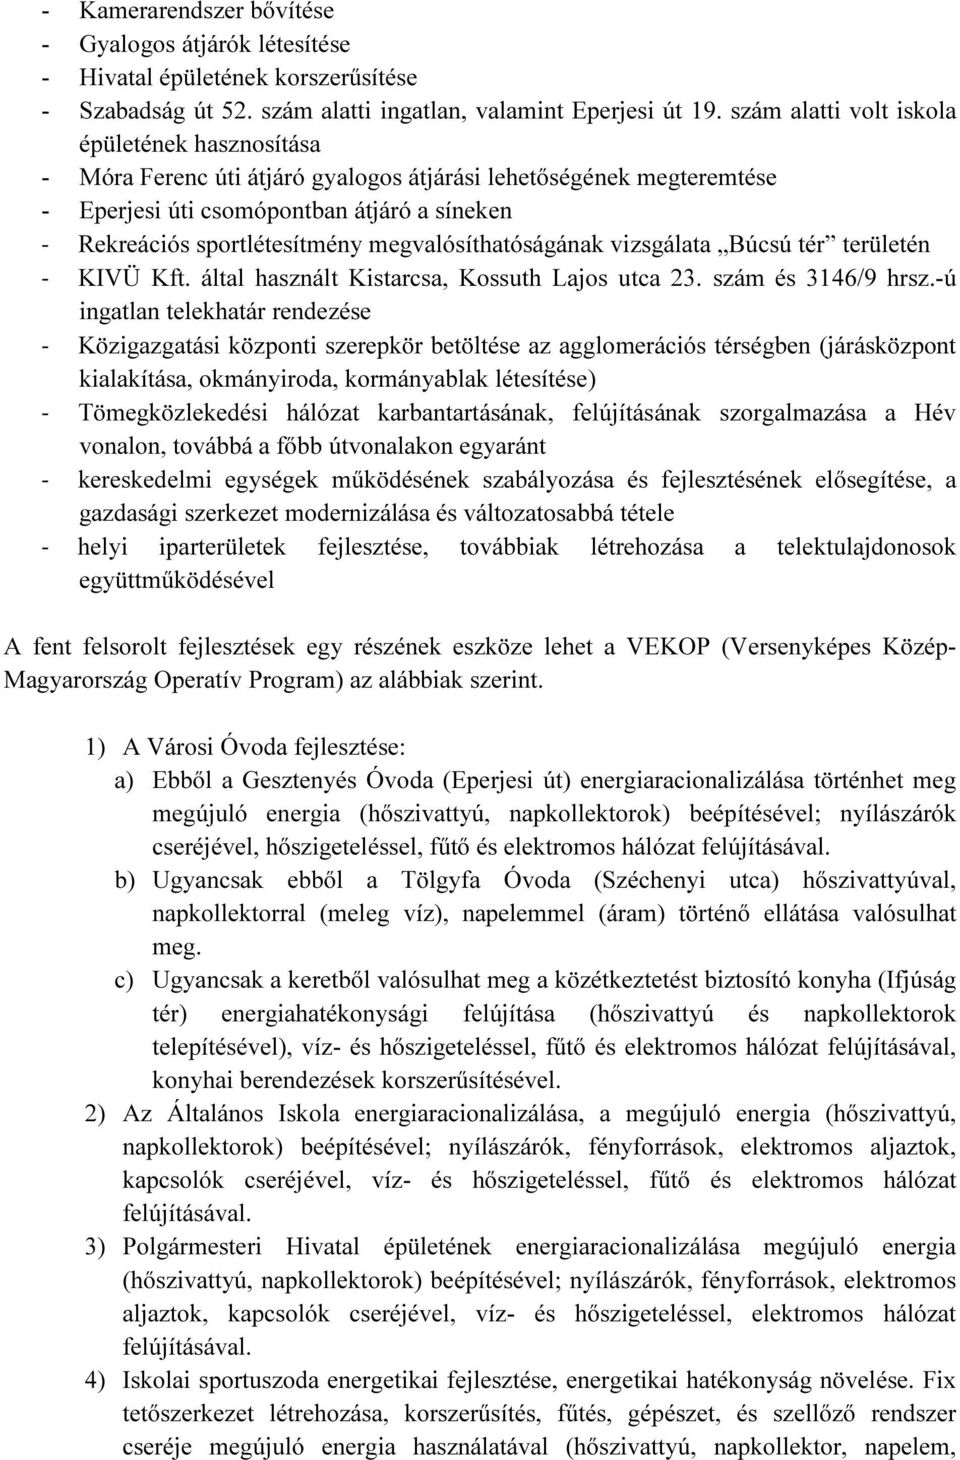 megvalósíthatóságának vizsgálata Búcsú tér területén - KIVÜ Kft. által használt Kistarcsa, Kossuth Lajos utca 23. szám és 3146/9 hrsz.